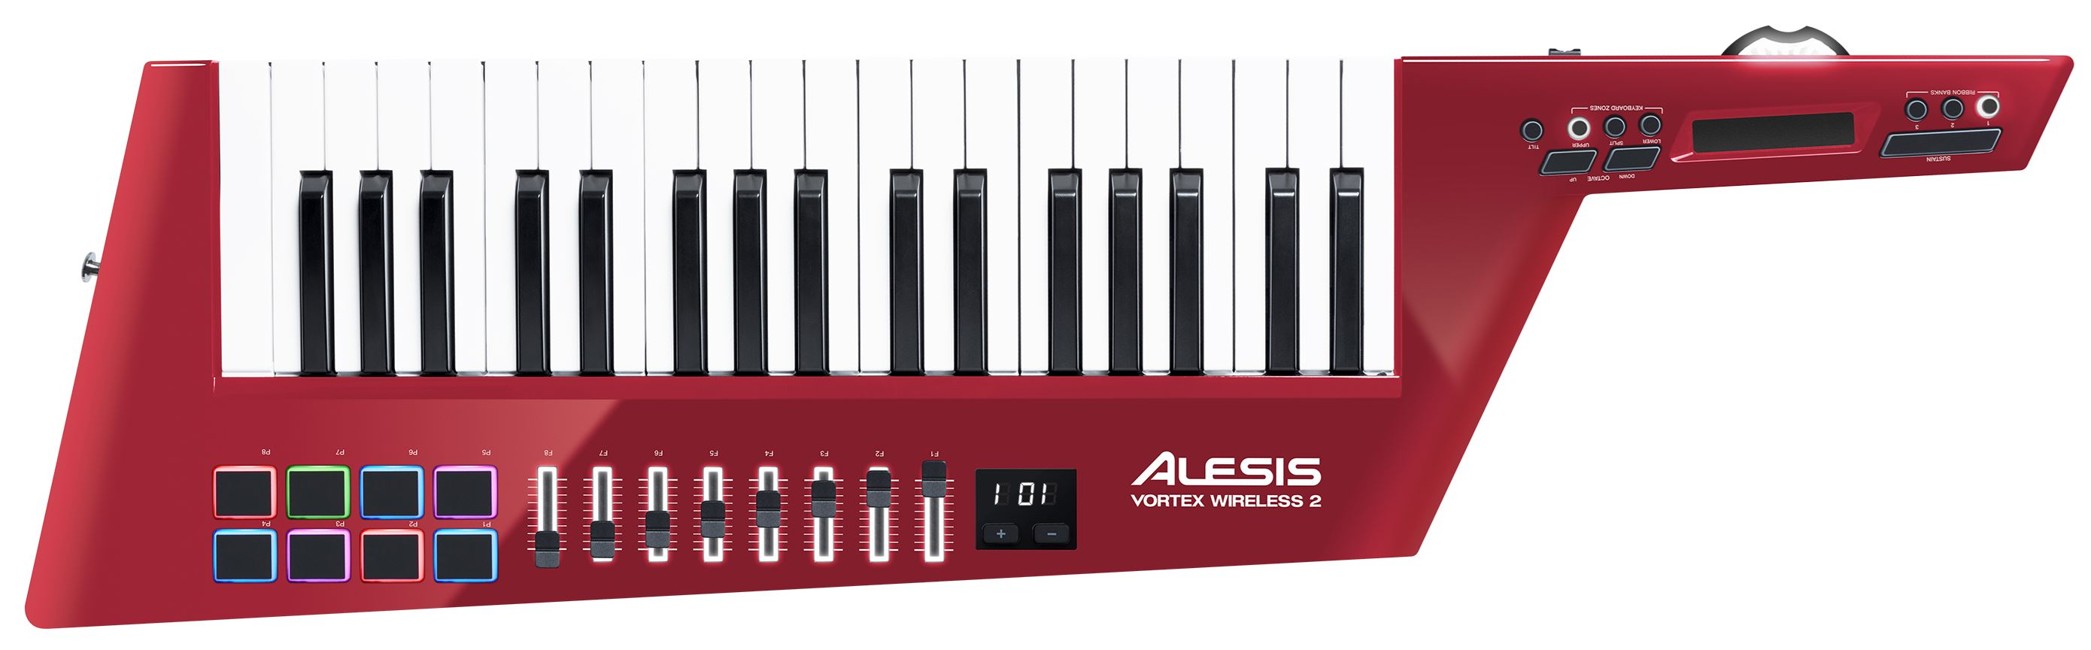 Alesis - Vortex Wireless II - USB MIDI Keytar Controller (Limited Edition, RED)